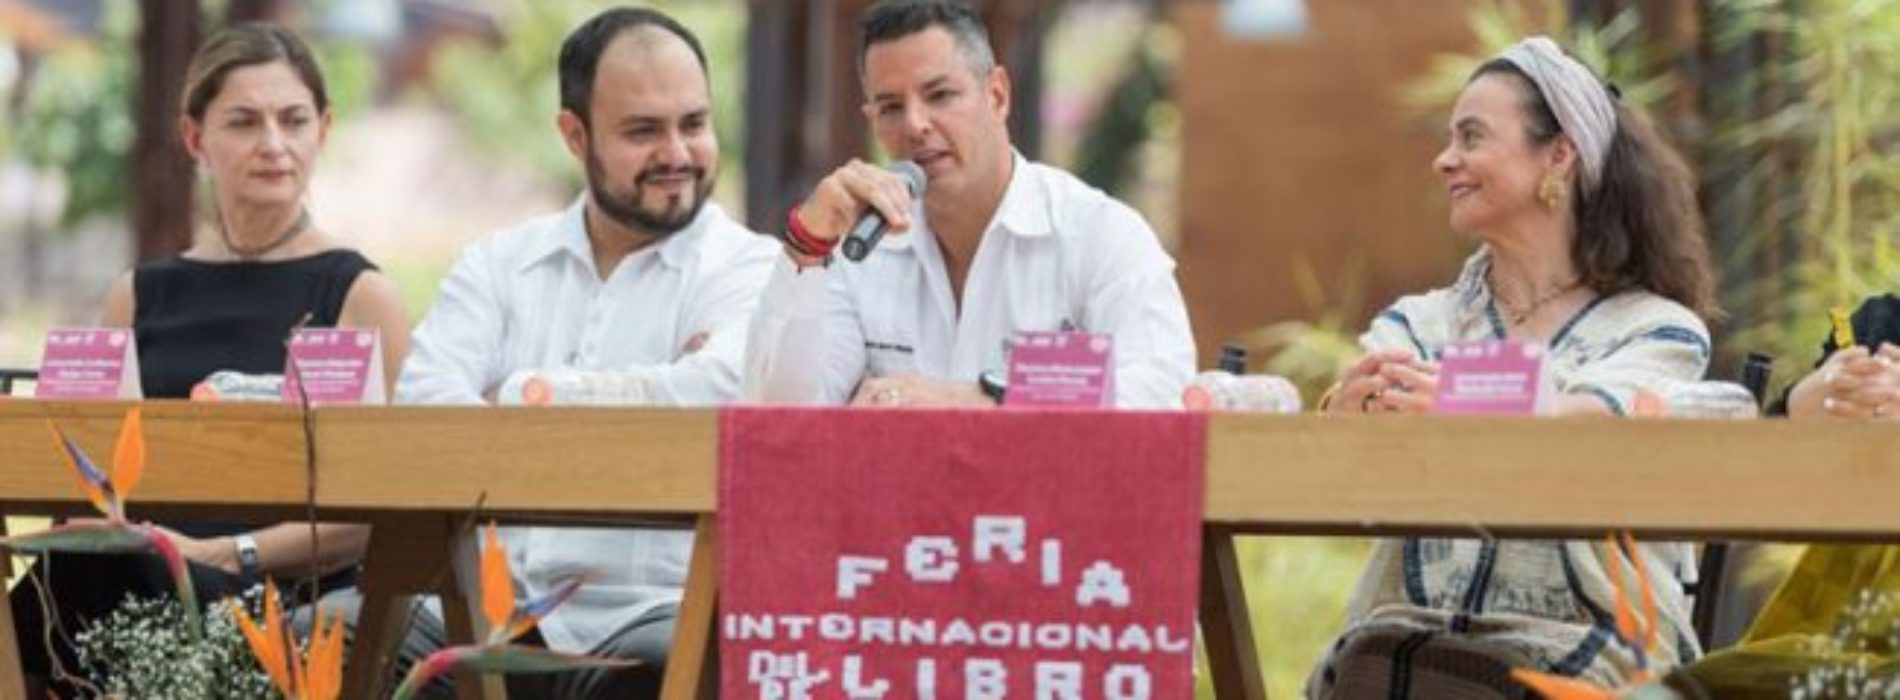 Realizarán 38 Feria Internacional del Libro en el Centro de
Convenciones de Oaxaca